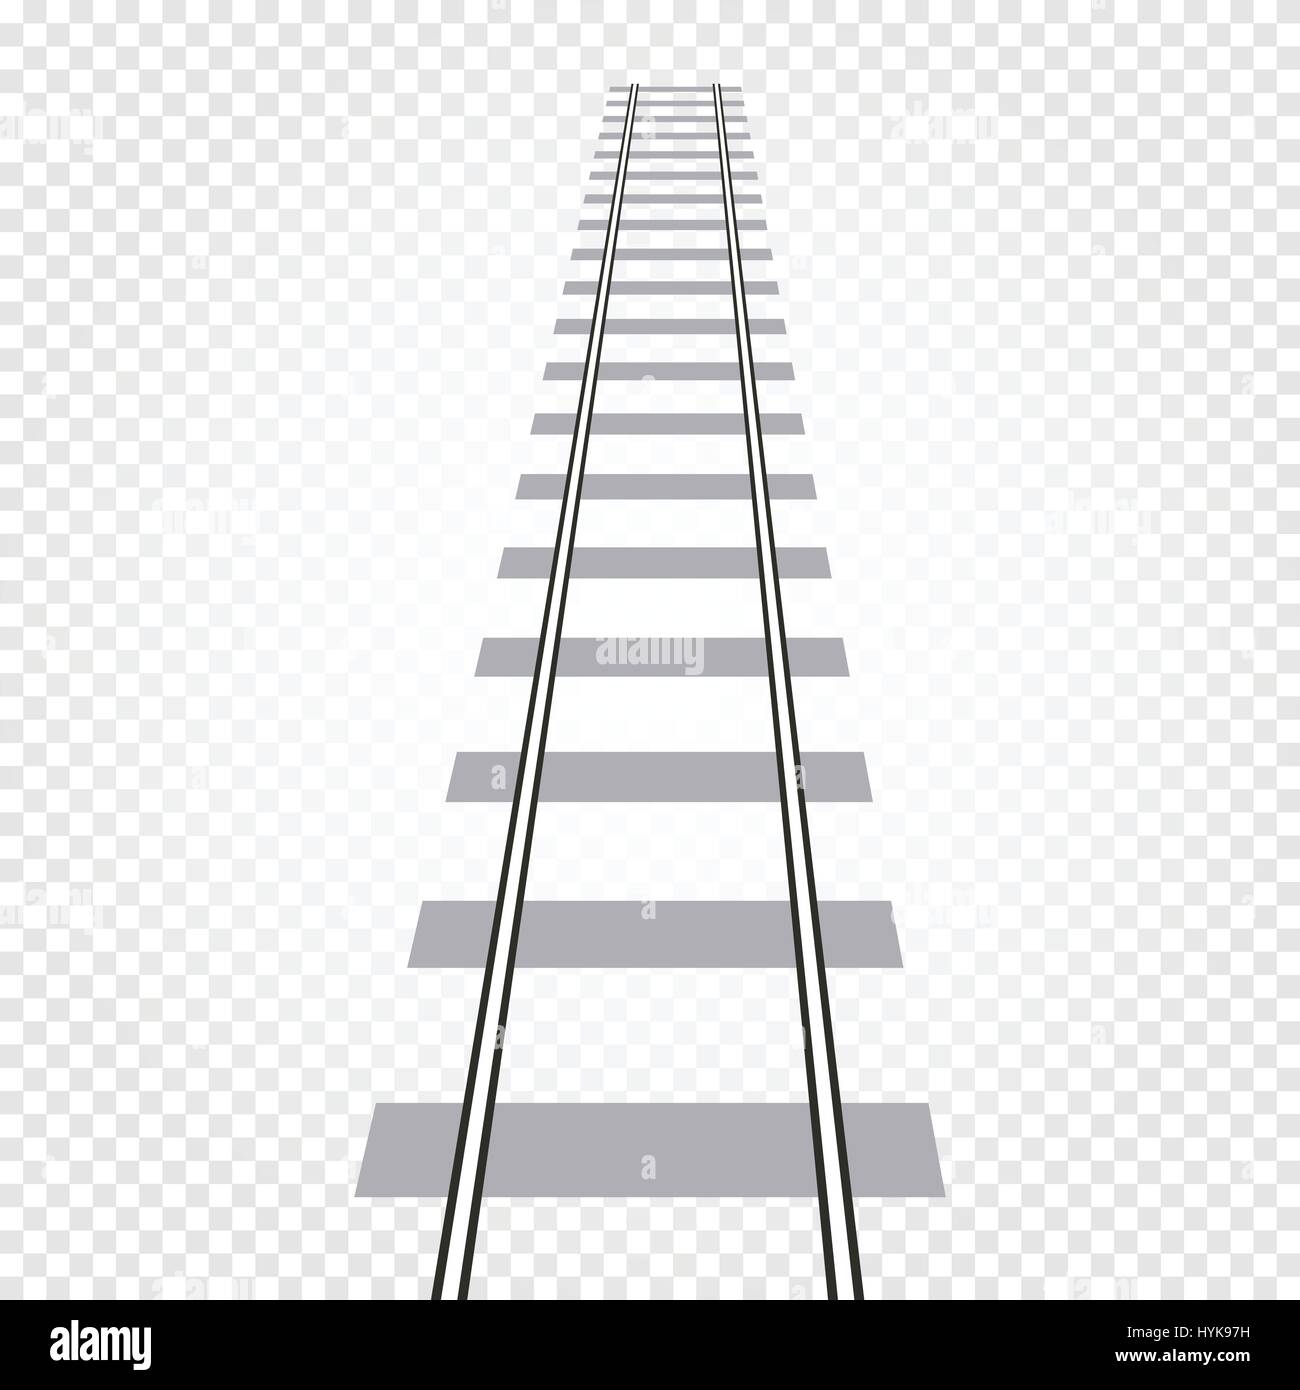 Couleur gris abstrait isolé sur la route de fer, échelle checkered background vector illustration Illustration de Vecteur